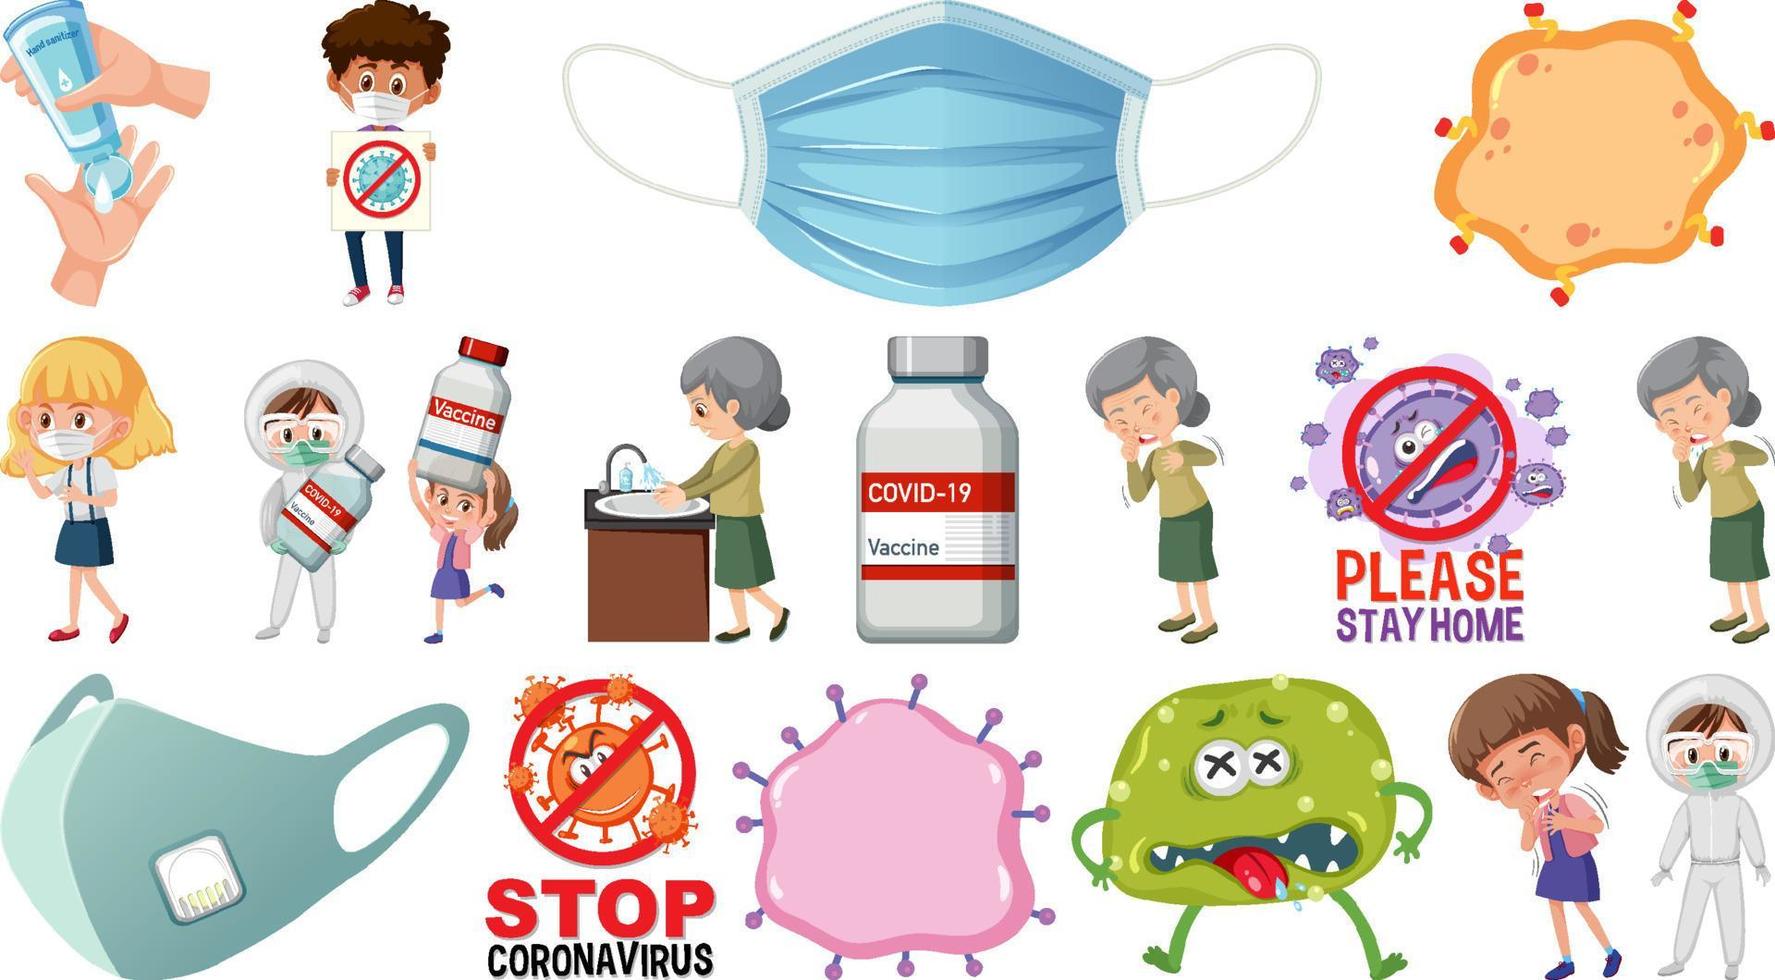 personnage de dessin animé et objets isolés de vaccination contre le coronavirus vecteur